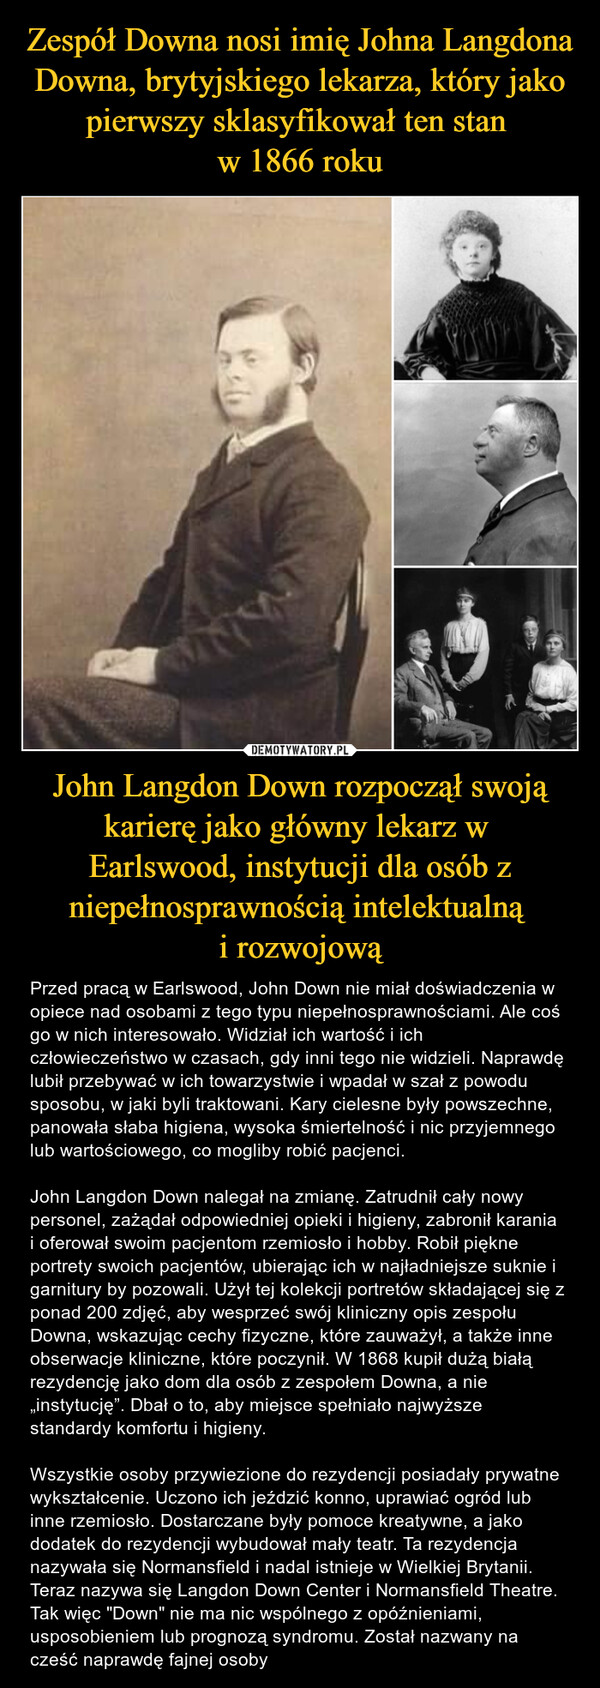 John Langdon Down rozpoczął swoją karierę jako główny lekarz w Earlswood, instytucji dla osób z niepełnosprawnością intelektualną i rozwojową – Przed pracą w Earlswood, John Down nie miał doświadczenia w opiece nad osobami z tego typu niepełnosprawnościami. Ale coś go w nich interesowało. Widział ich wartość i ich człowieczeństwo w czasach, gdy inni tego nie widzieli. Naprawdę lubił przebywać w ich towarzystwie i wpadał w szał z powodu sposobu, w jaki byli traktowani. Kary cielesne były powszechne, panowała słaba higiena, wysoka śmiertelność i nic przyjemnego lub wartościowego, co mogliby robić pacjenci. John Langdon Down nalegał na zmianę. Zatrudnił cały nowy personel, zażądał odpowiedniej opieki i higieny, zabronił karania i oferował swoim pacjentom rzemiosło i hobby. Robił piękne portrety swoich pacjentów, ubierając ich w najładniejsze suknie i garnitury by pozowali. Użył tej kolekcji portretów składającej się z ponad 200 zdjęć, aby wesprzeć swój kliniczny opis zespołu Downa, wskazując cechy fizyczne, które zauważył, a także inne obserwacje kliniczne, które poczynił. W 1868 kupił dużą białą rezydencję jako dom dla osób z zespołem Downa, a nie „instytucję”. Dbał o to, aby miejsce spełniało najwyższe standardy komfortu i higieny. Wszystkie osoby przywiezione do rezydencji posiadały prywatne wykształcenie. Uczono ich jeździć konno, uprawiać ogród lub inne rzemiosło. Dostarczane były pomoce kreatywne, a jako dodatek do rezydencji wybudował mały teatr. Ta rezydencja nazywała się Normansfield i nadal istnieje w Wielkiej Brytanii. Teraz nazywa się Langdon Down Center i Normansfield Theatre. Tak więc "Down" nie ma nic wspólnego z opóźnieniami, usposobieniem lub prognozą syndromu. Został nazwany na cześć naprawdę fajnej osoby 